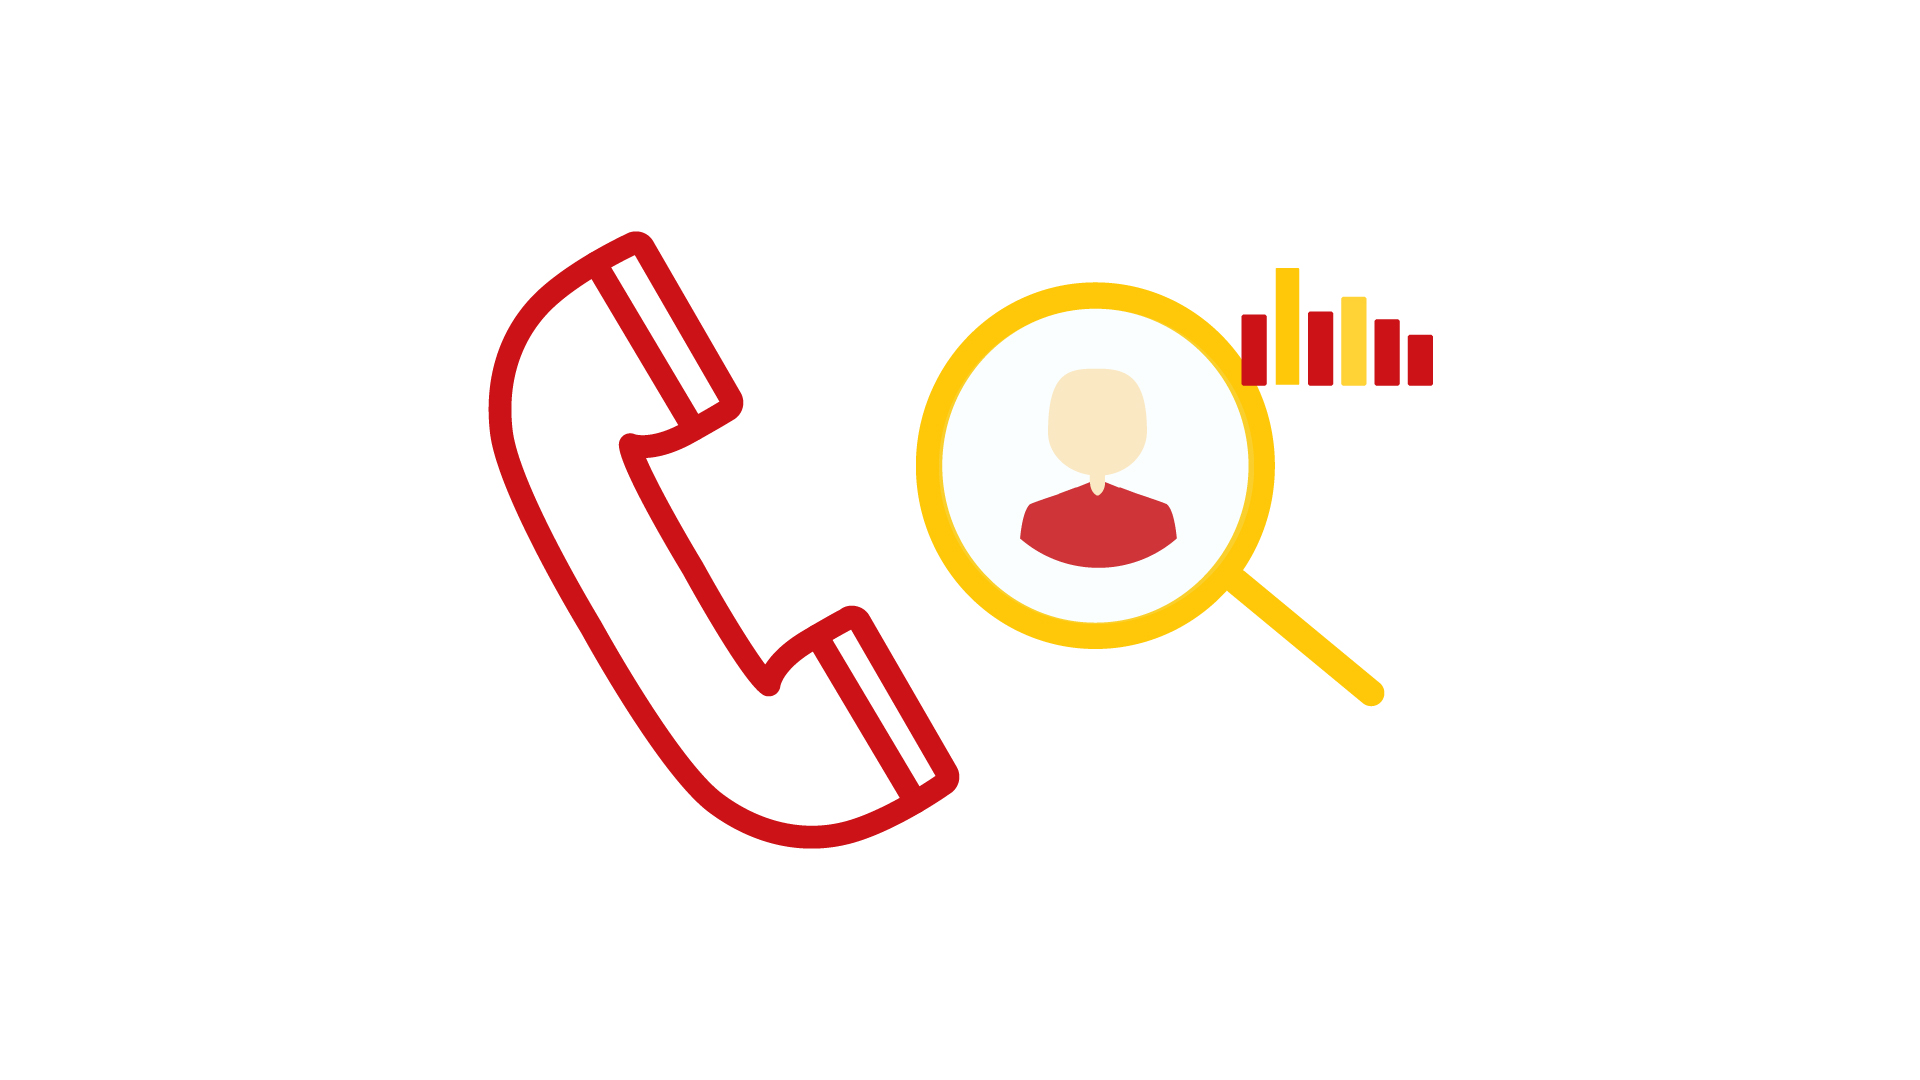 Es ist ein roter Telefonhörer zu sehen, neben dem rechts eine Lupe mit einem Kunden innhalb sowie Balken zu sehen sind.